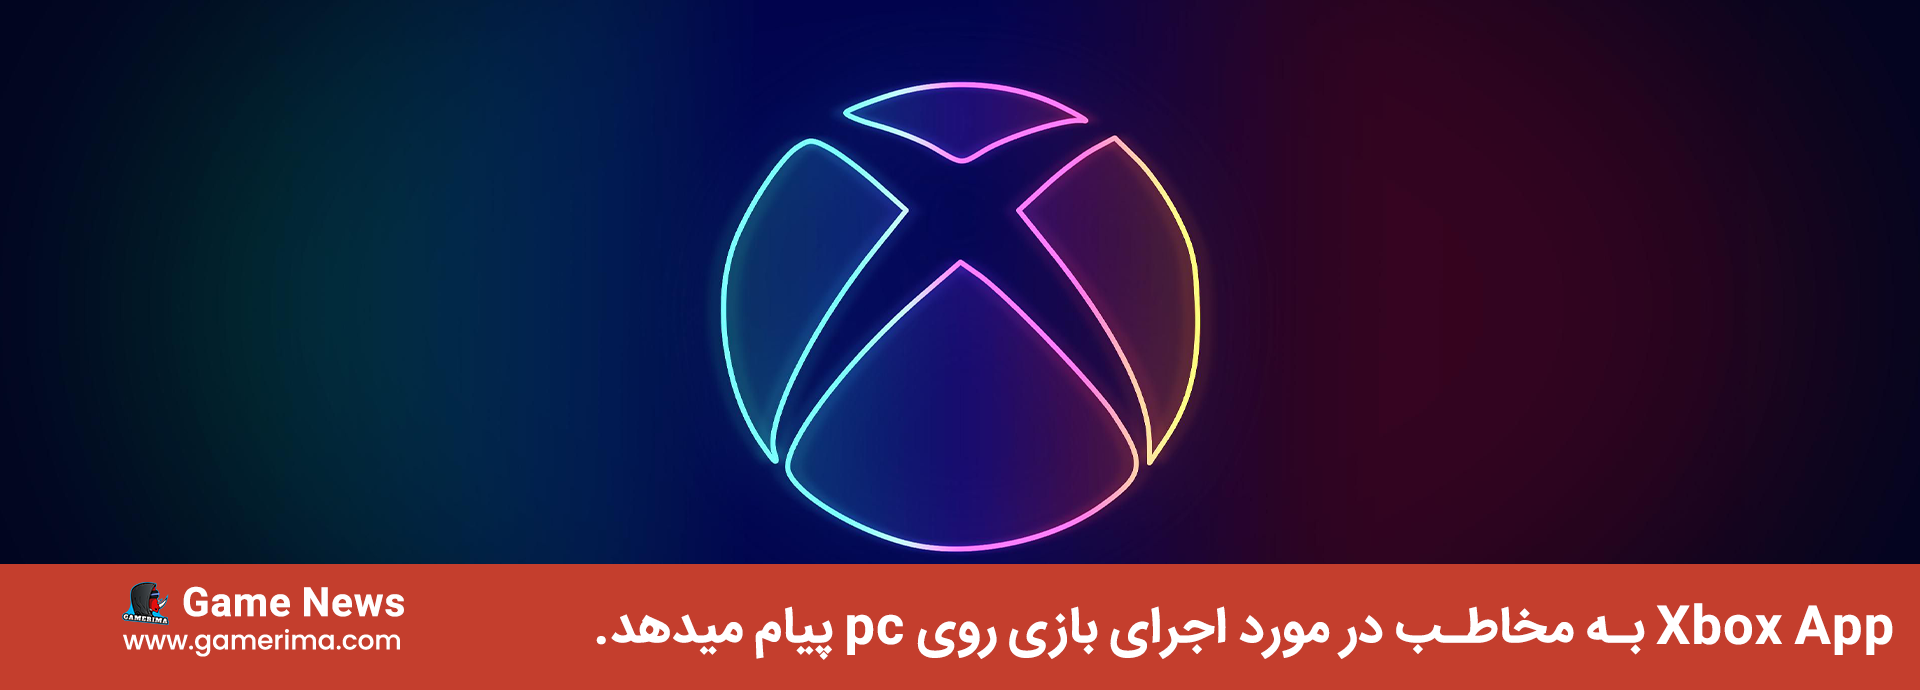 Xbox App به مخاطب در مورد اجرای بازی روی pc پیام میدهد.